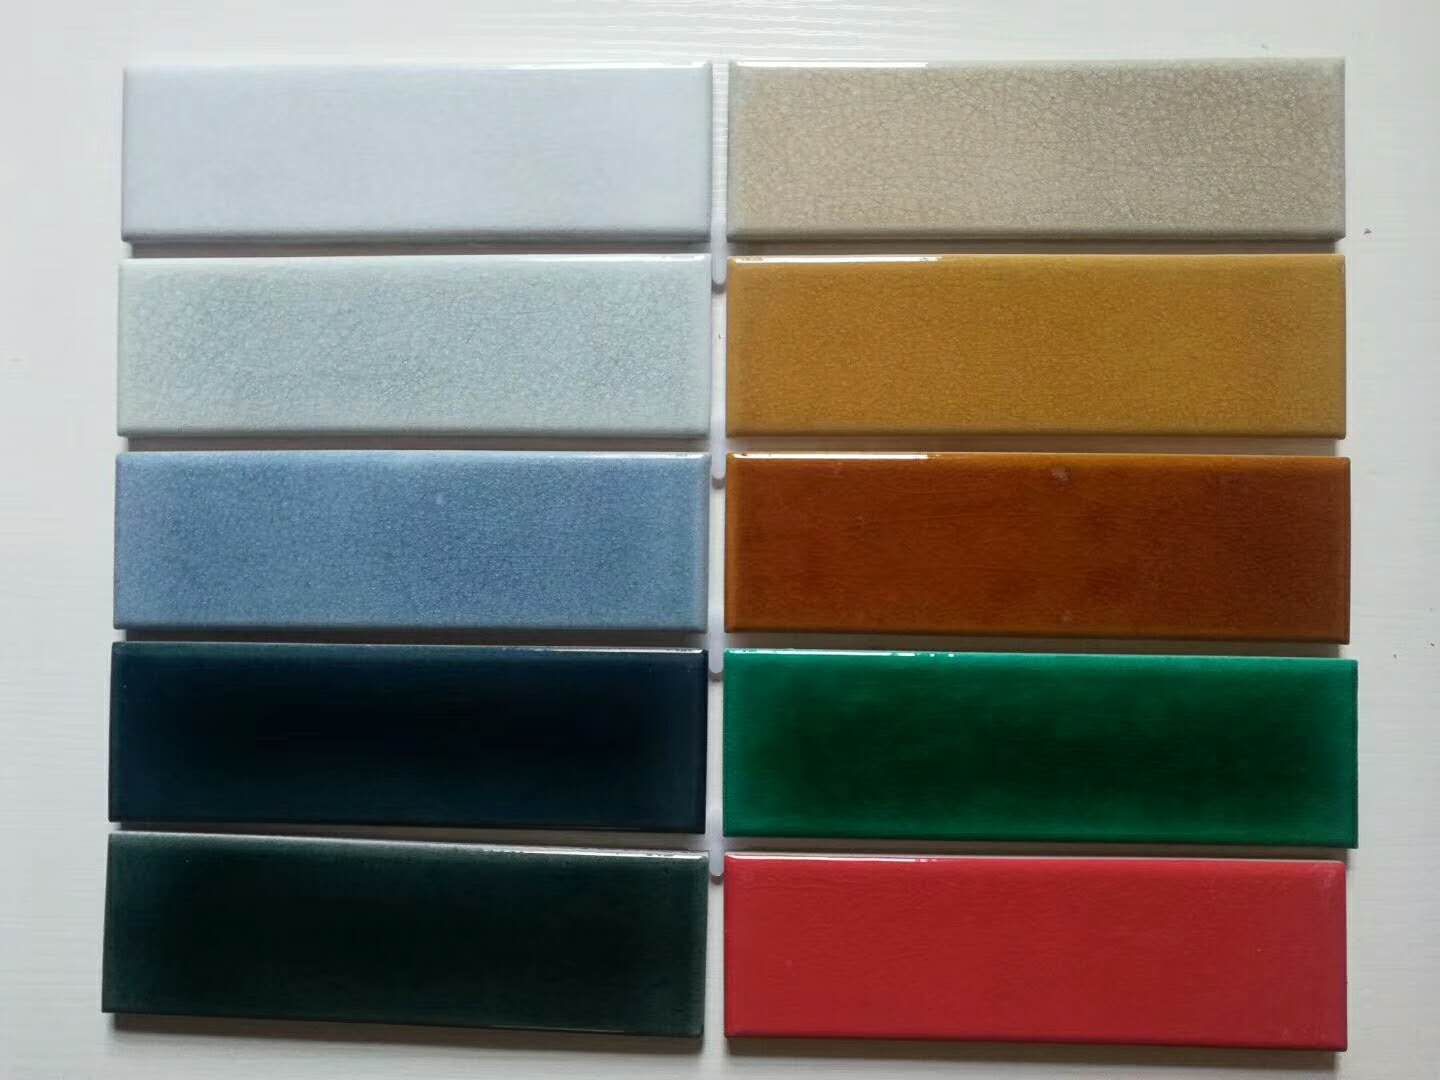 60x200mm crackle glazed tiles